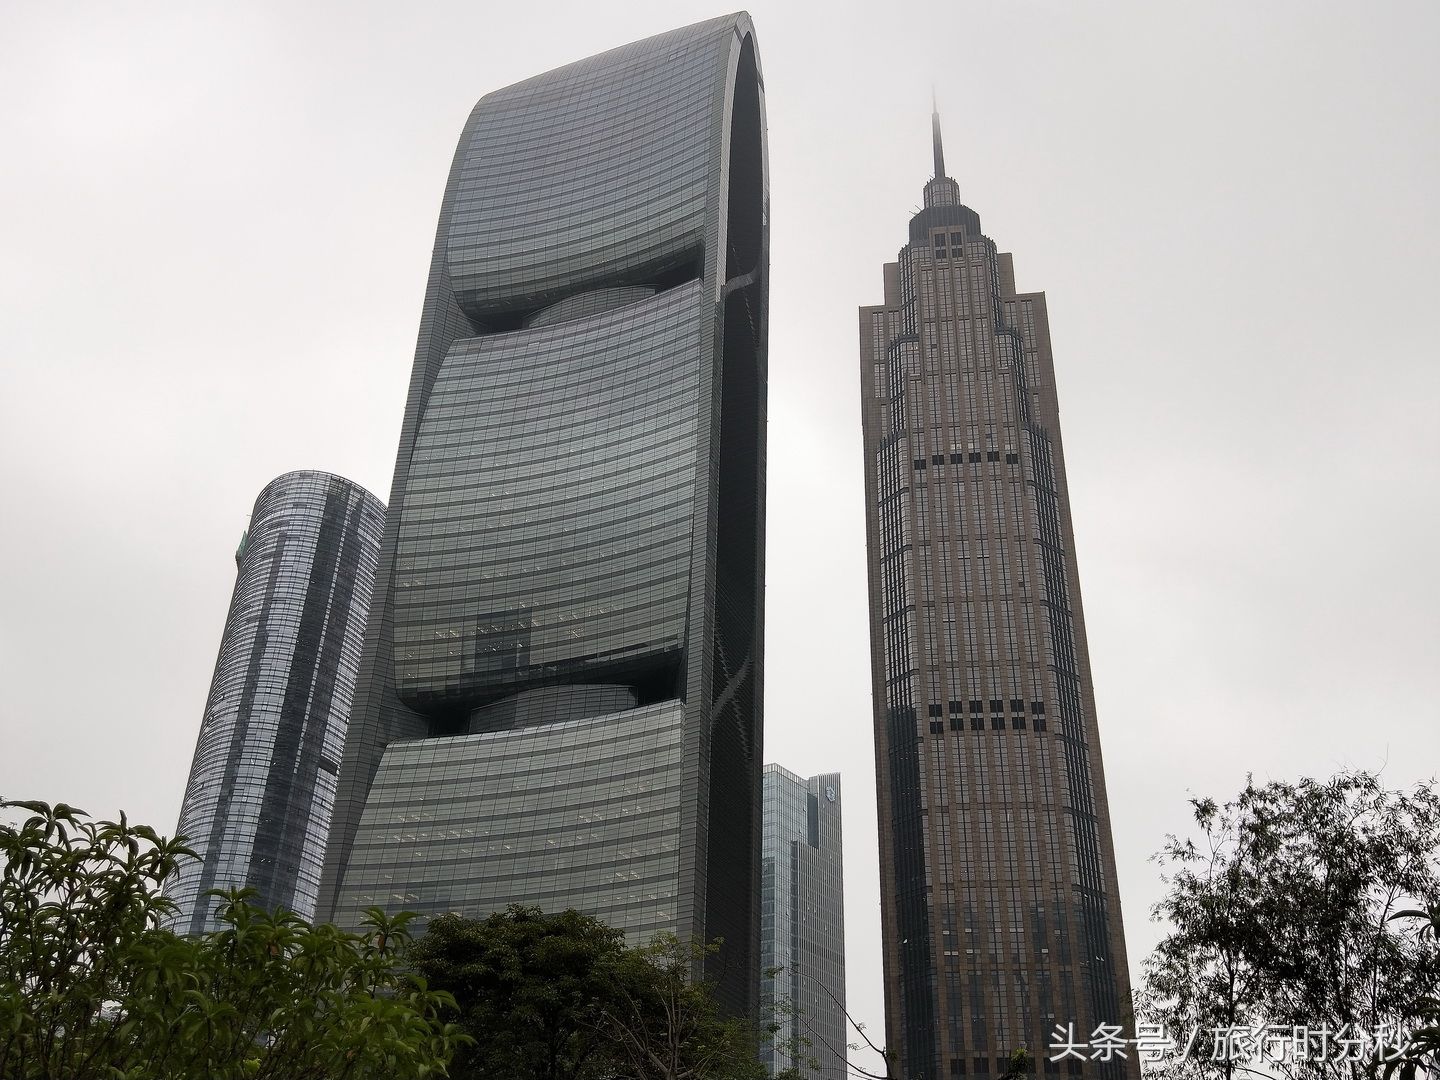 广州文具三件套建筑:铅笔大楼和橡皮擦大楼,还